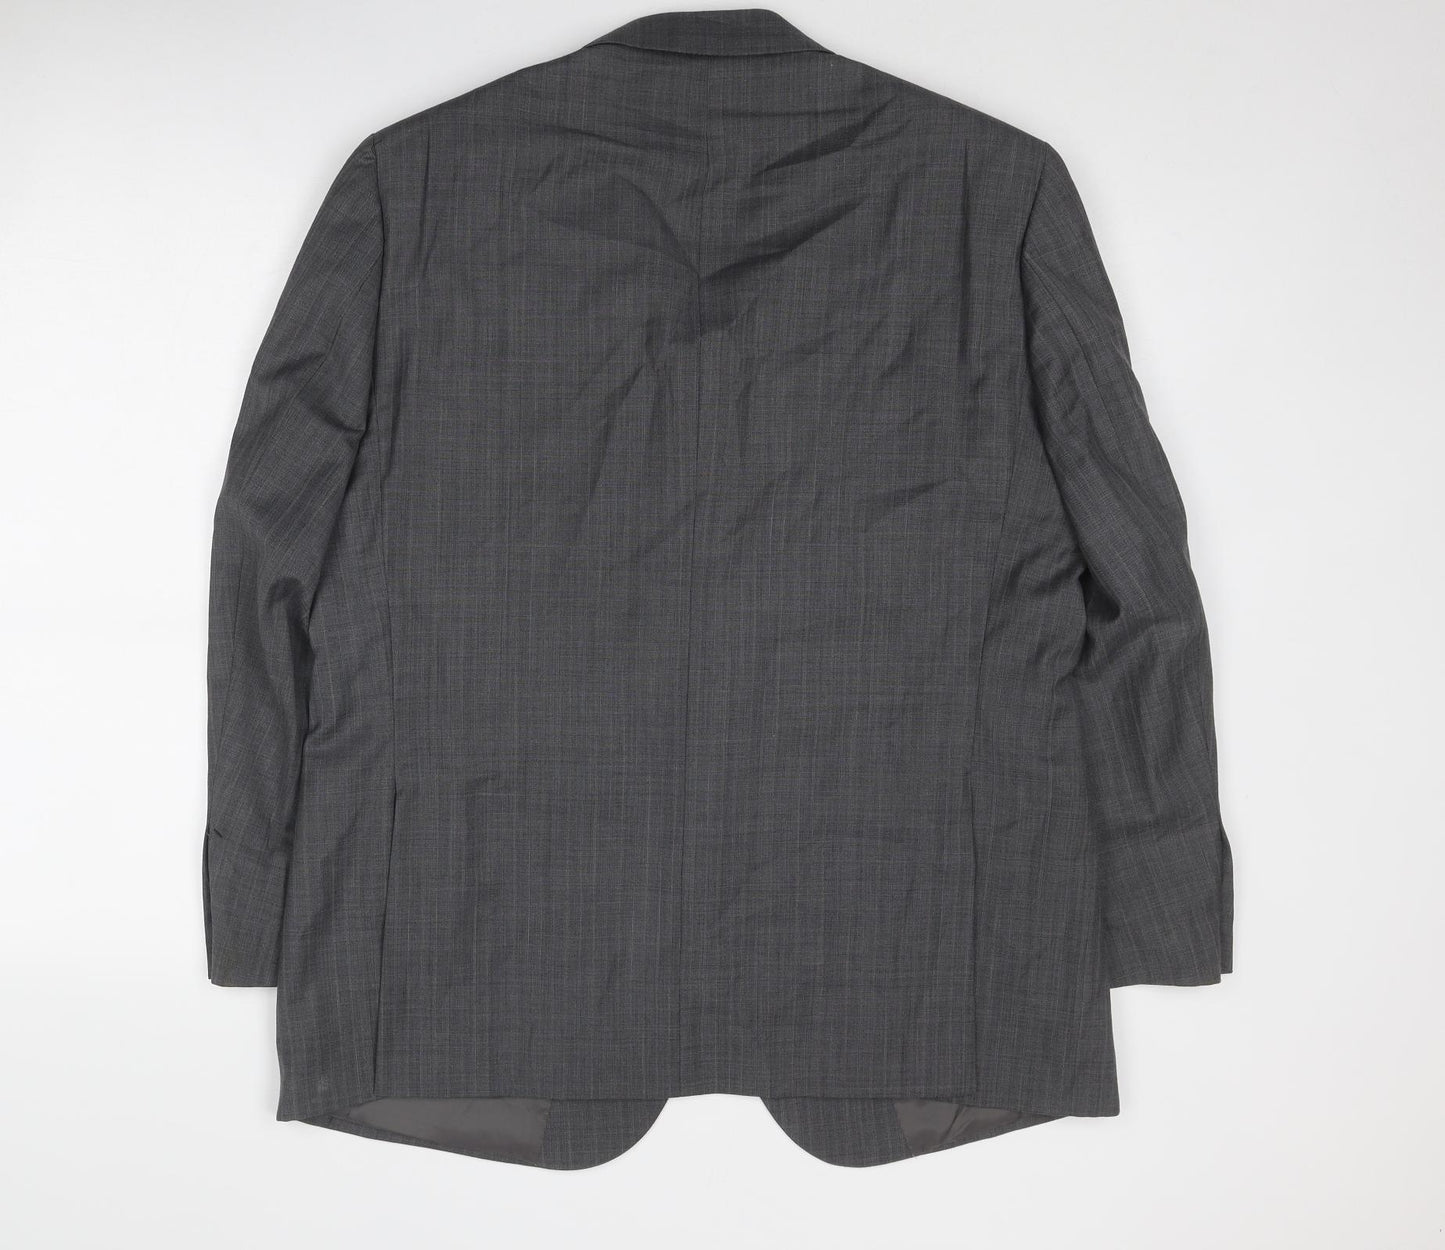 Brook Taverner Mens Grey Wool Jacket Suit Jacket Size 42 Regular